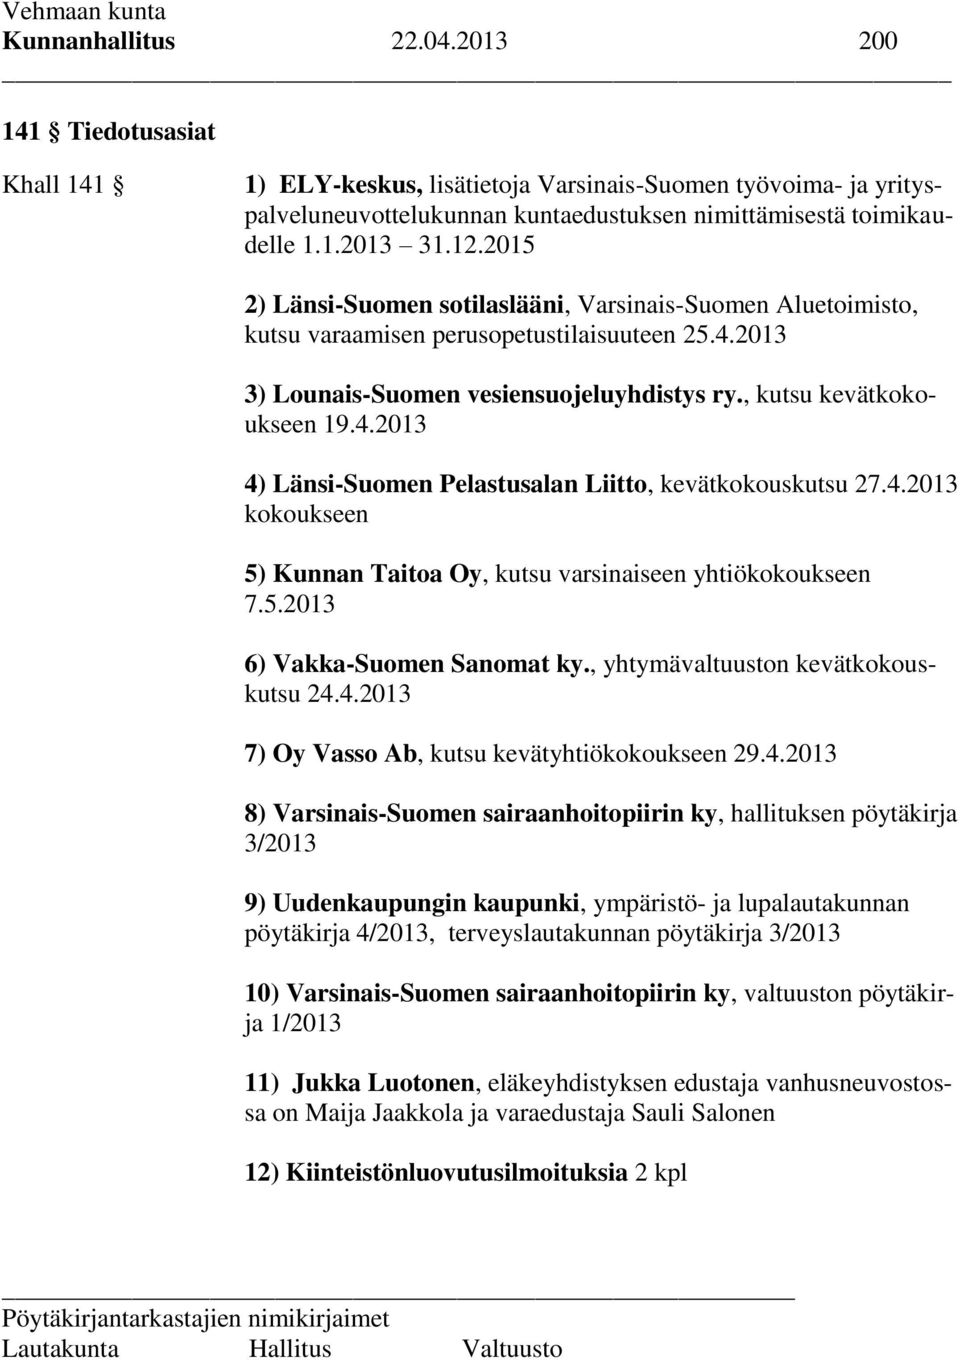 4.2013 kokoukseen 5) Kunnan Taitoa Oy, kutsu varsinaiseen yhtiökokoukseen 7.5.2013 6) Vakka-Suomen Sanomat ky., yhtymävaltuuston kevätkokouskutsu 24.4.2013 7) Oy Vasso Ab, kutsu kevätyhtiökokoukseen 29.